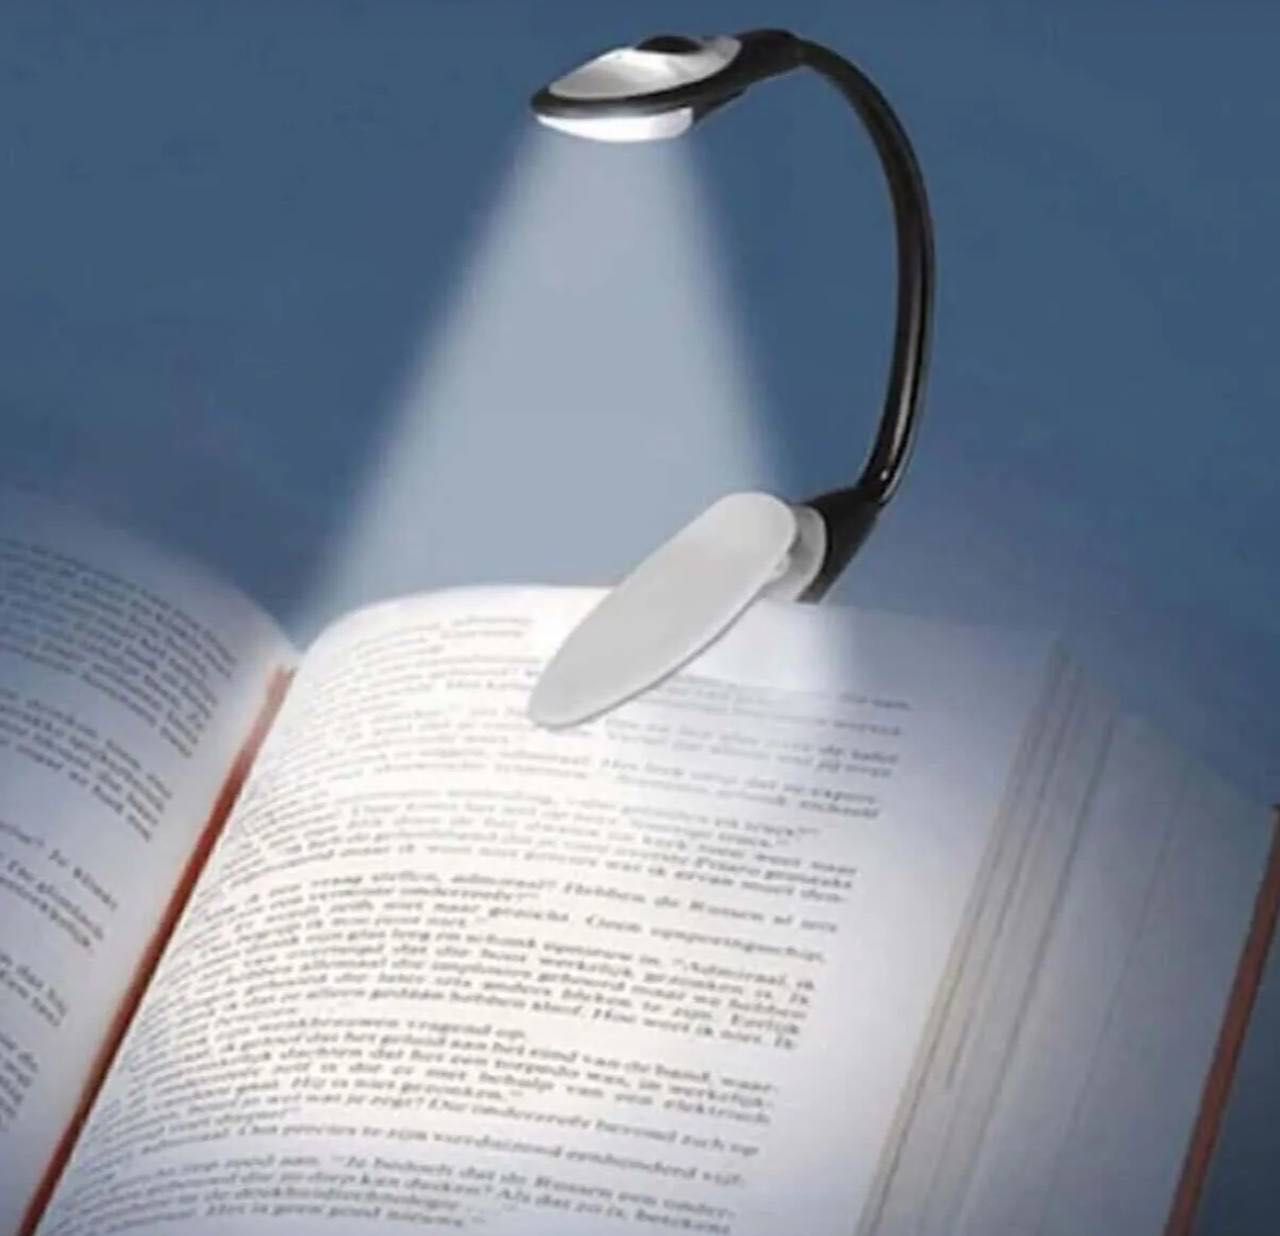 Гибкая практичная лампа для чтения книг.